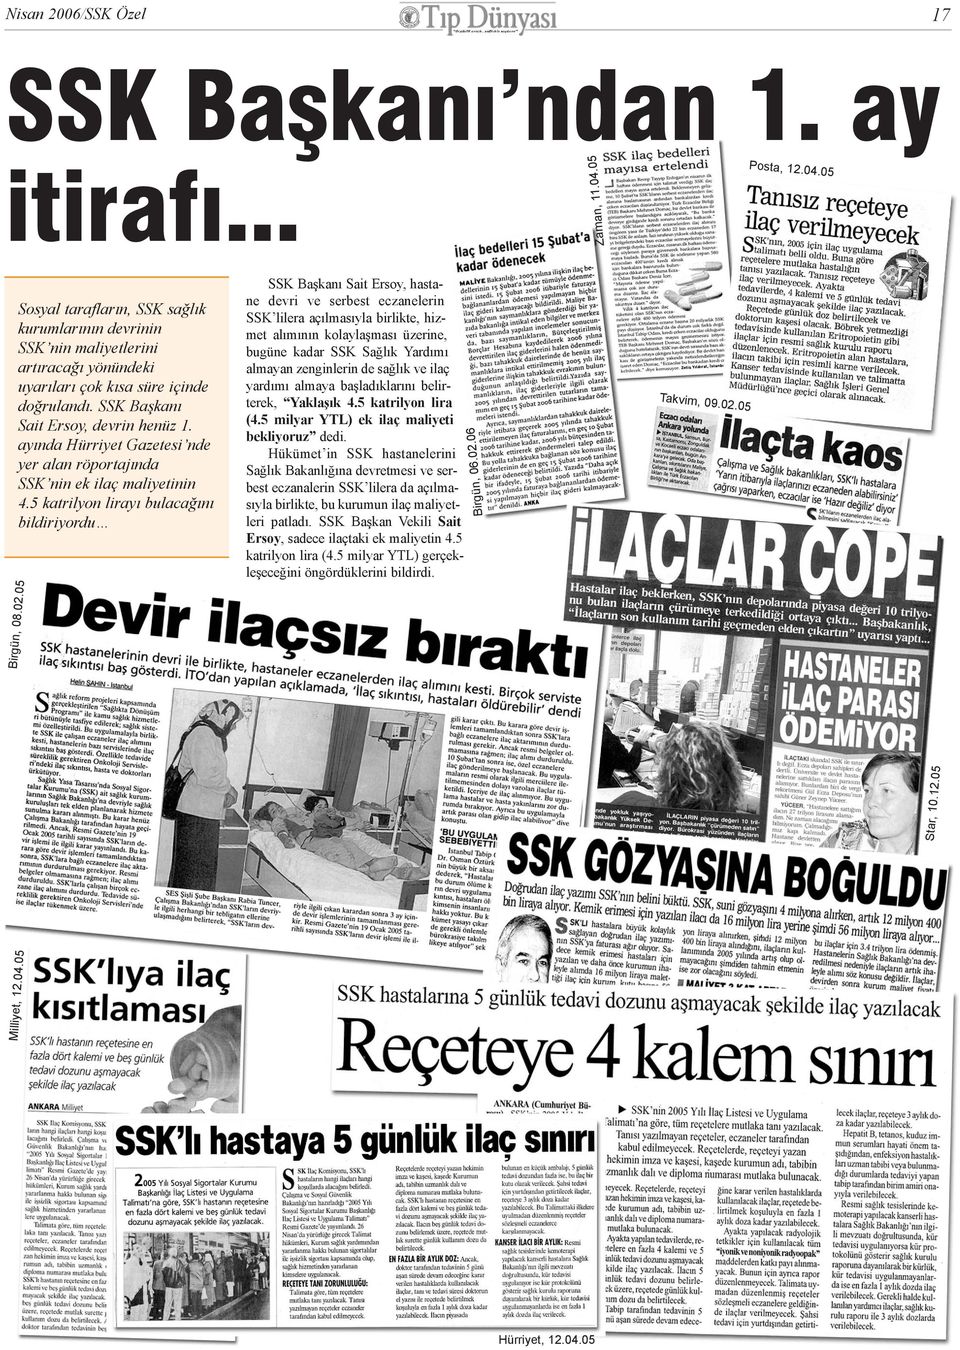 ayýnda Hürriyet Gazetesi nde yer alan röportajýnda SSK nin ek ilaç maliyetinin 4.